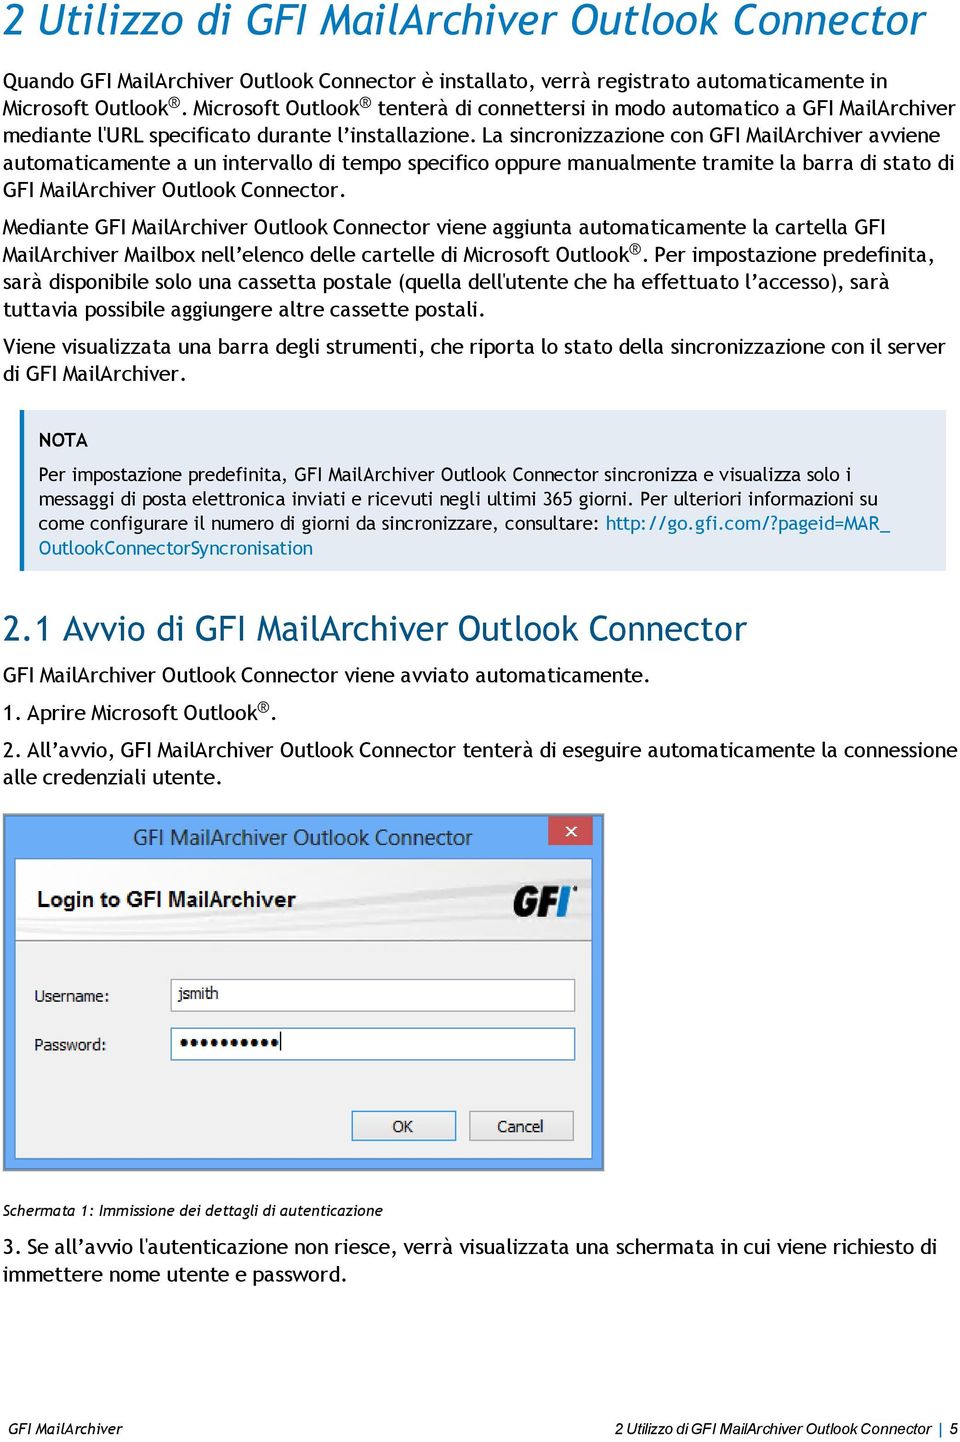 La sincronizzazione con GFI MailArchiver avviene automaticamente a un intervallo di tempo specifico oppure manualmente tramite la barra di stato di GFI MailArchiver Outlook Connector.